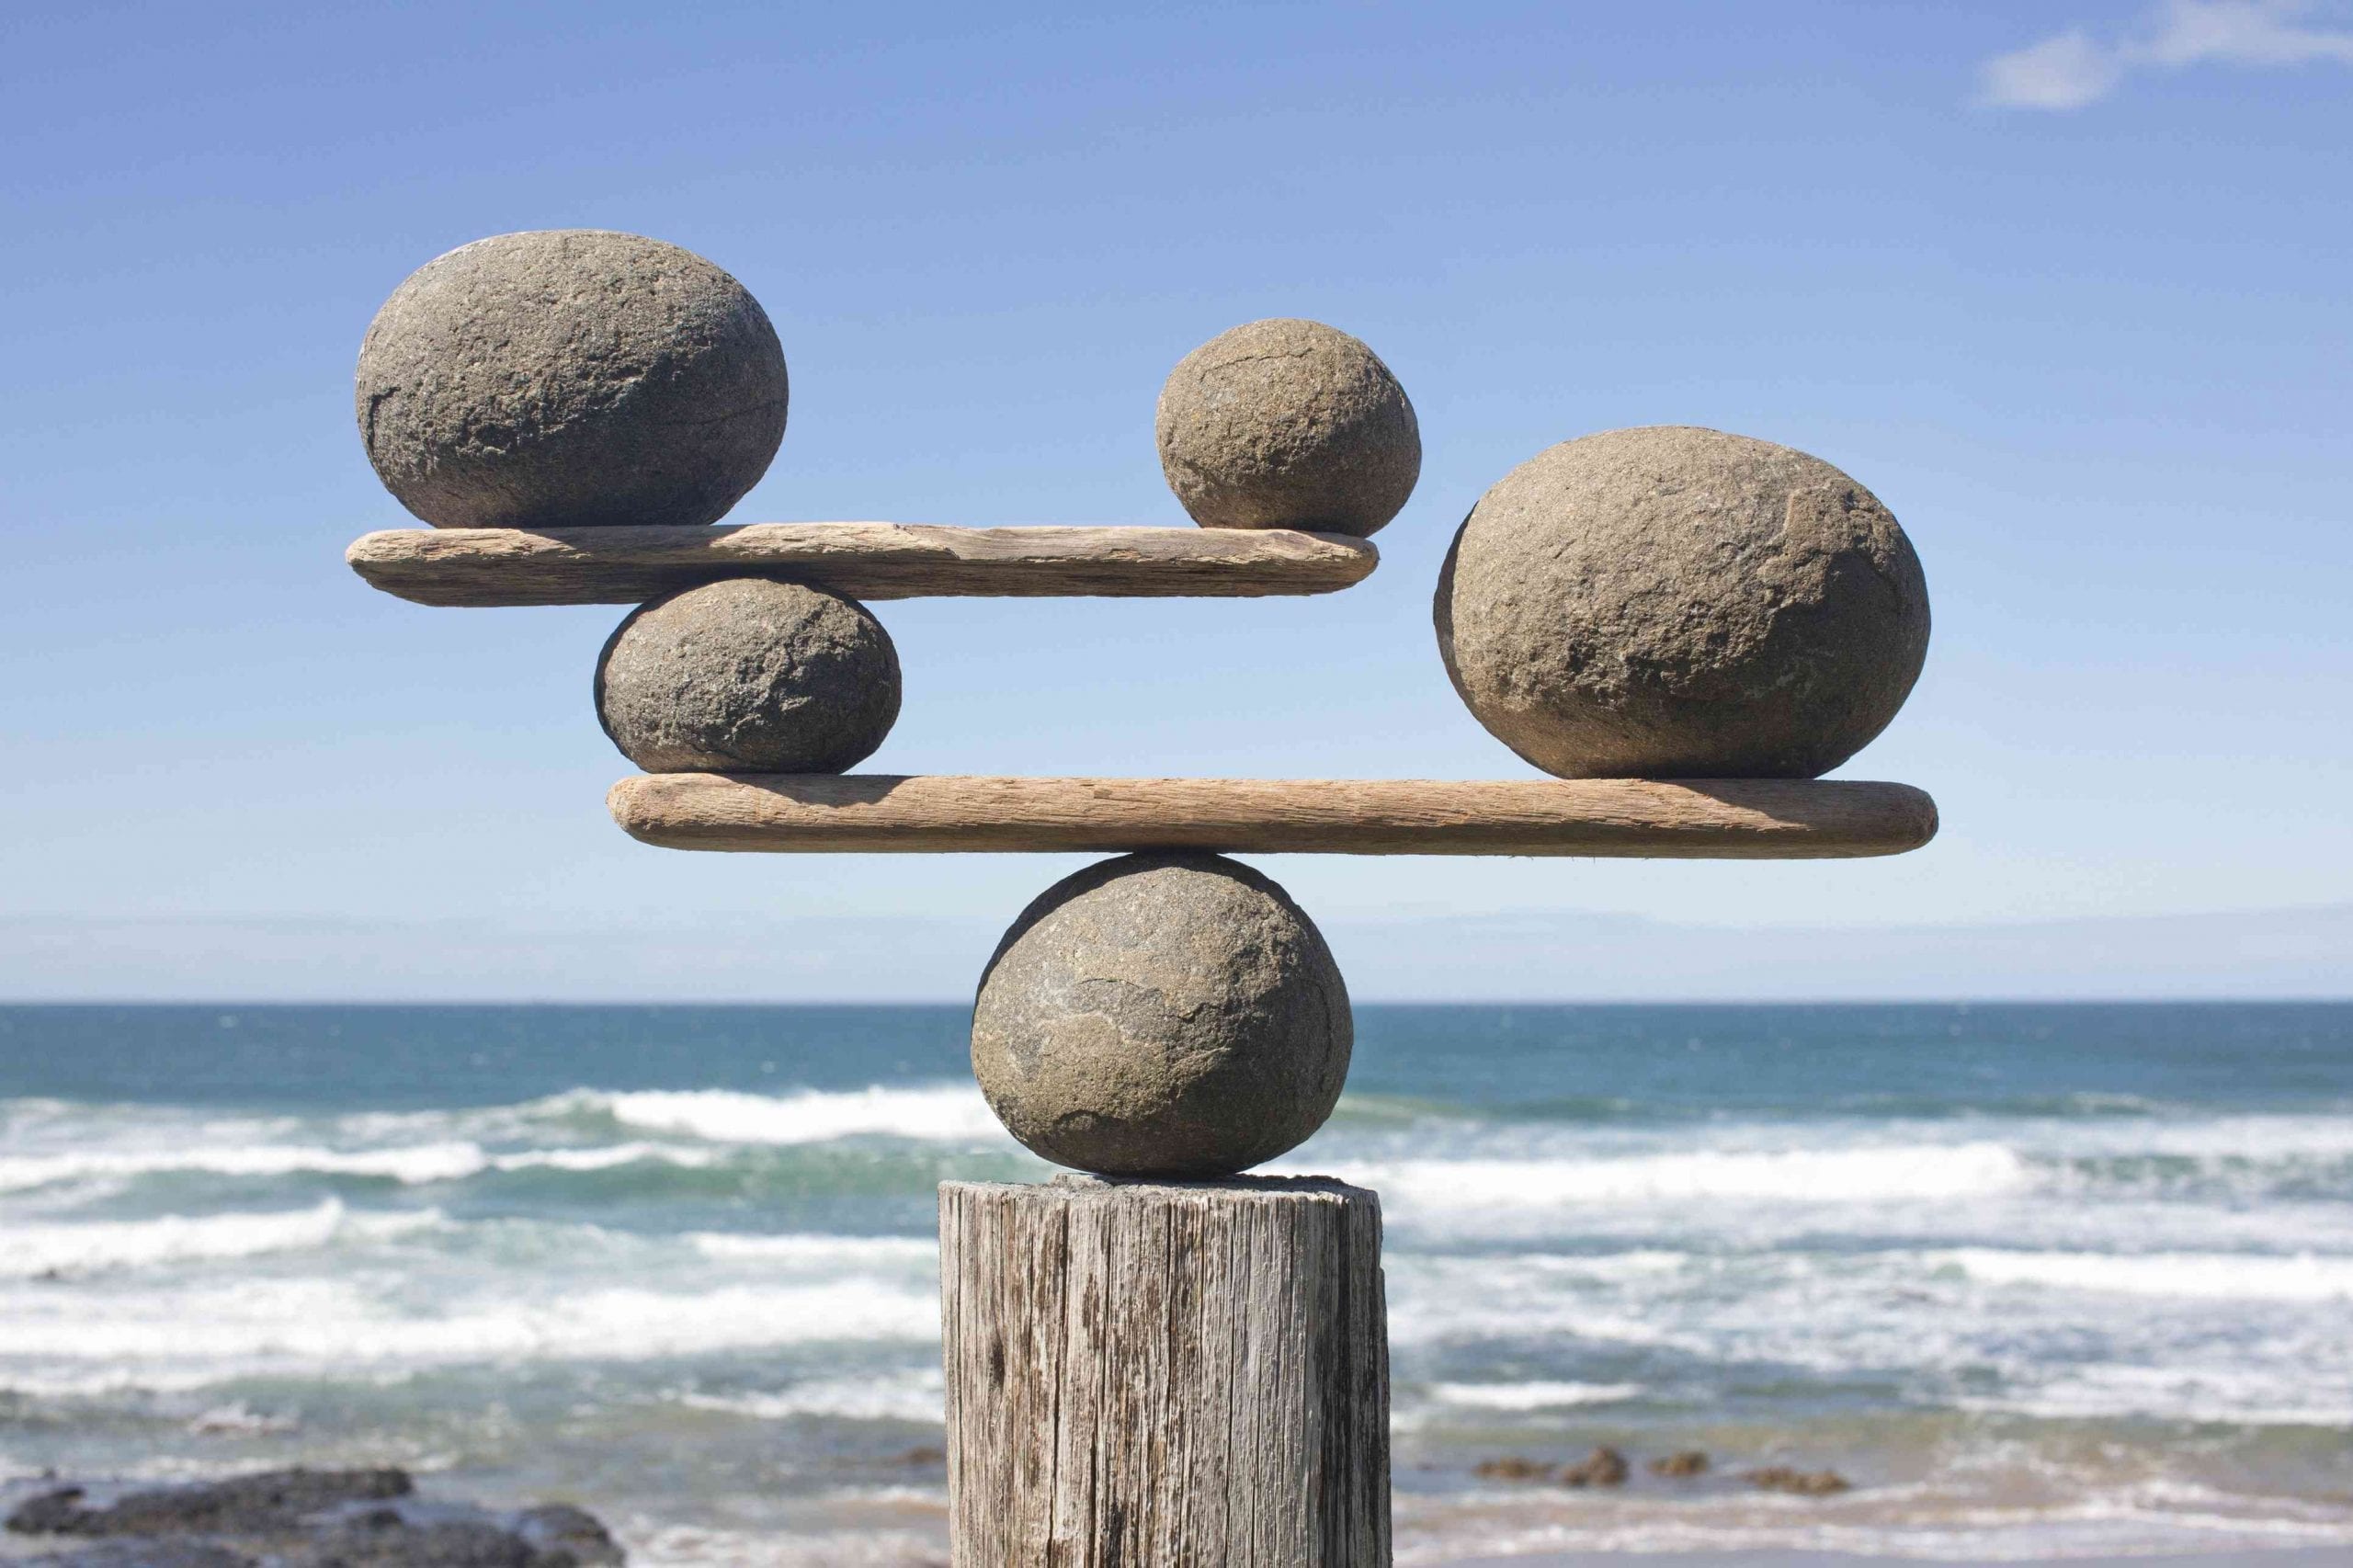 Achieving Balance